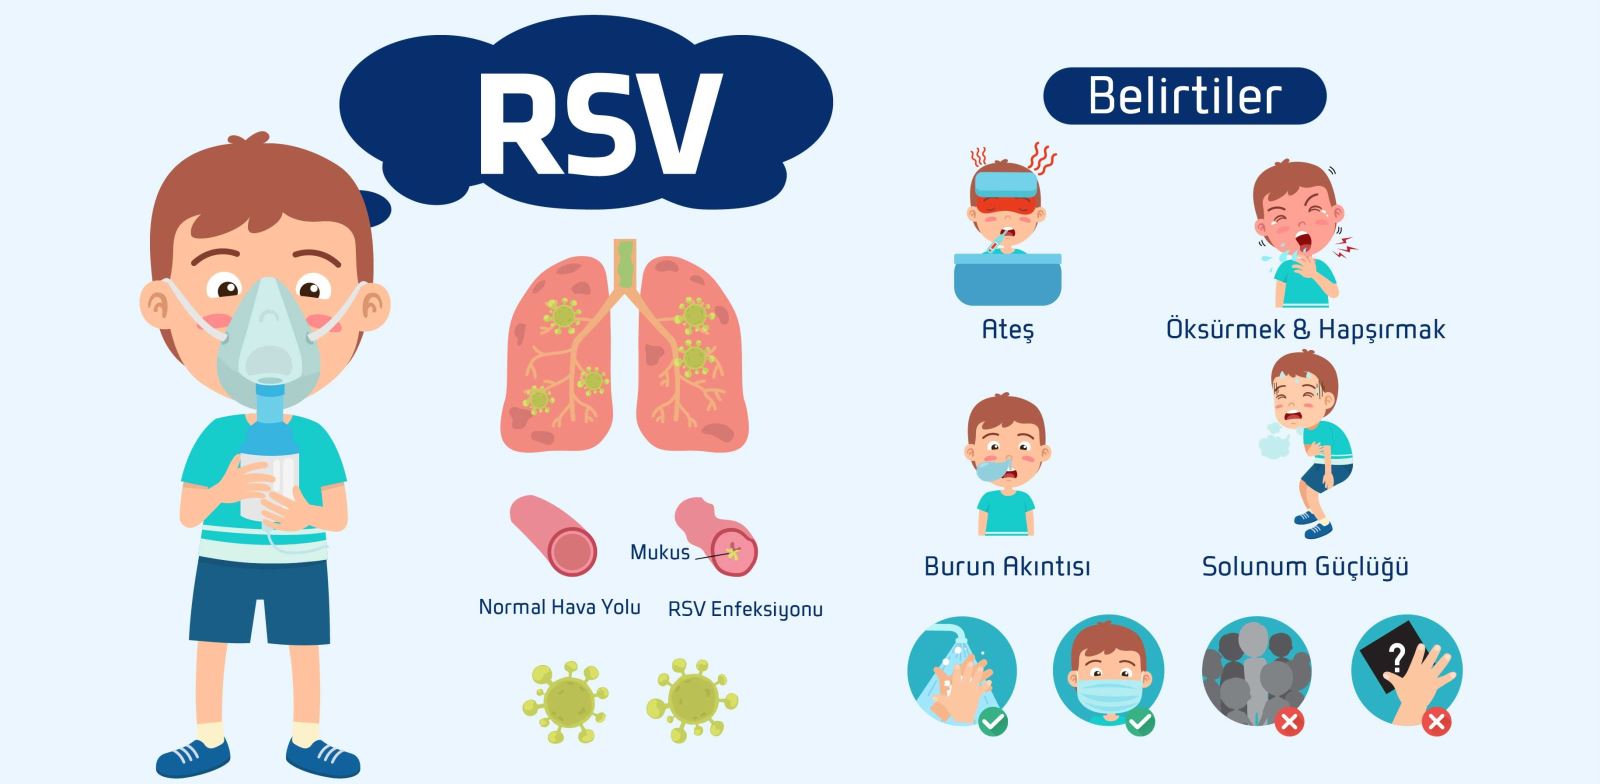 Rsv belirtileri grip belirtileri ile benzerlik gösterir.